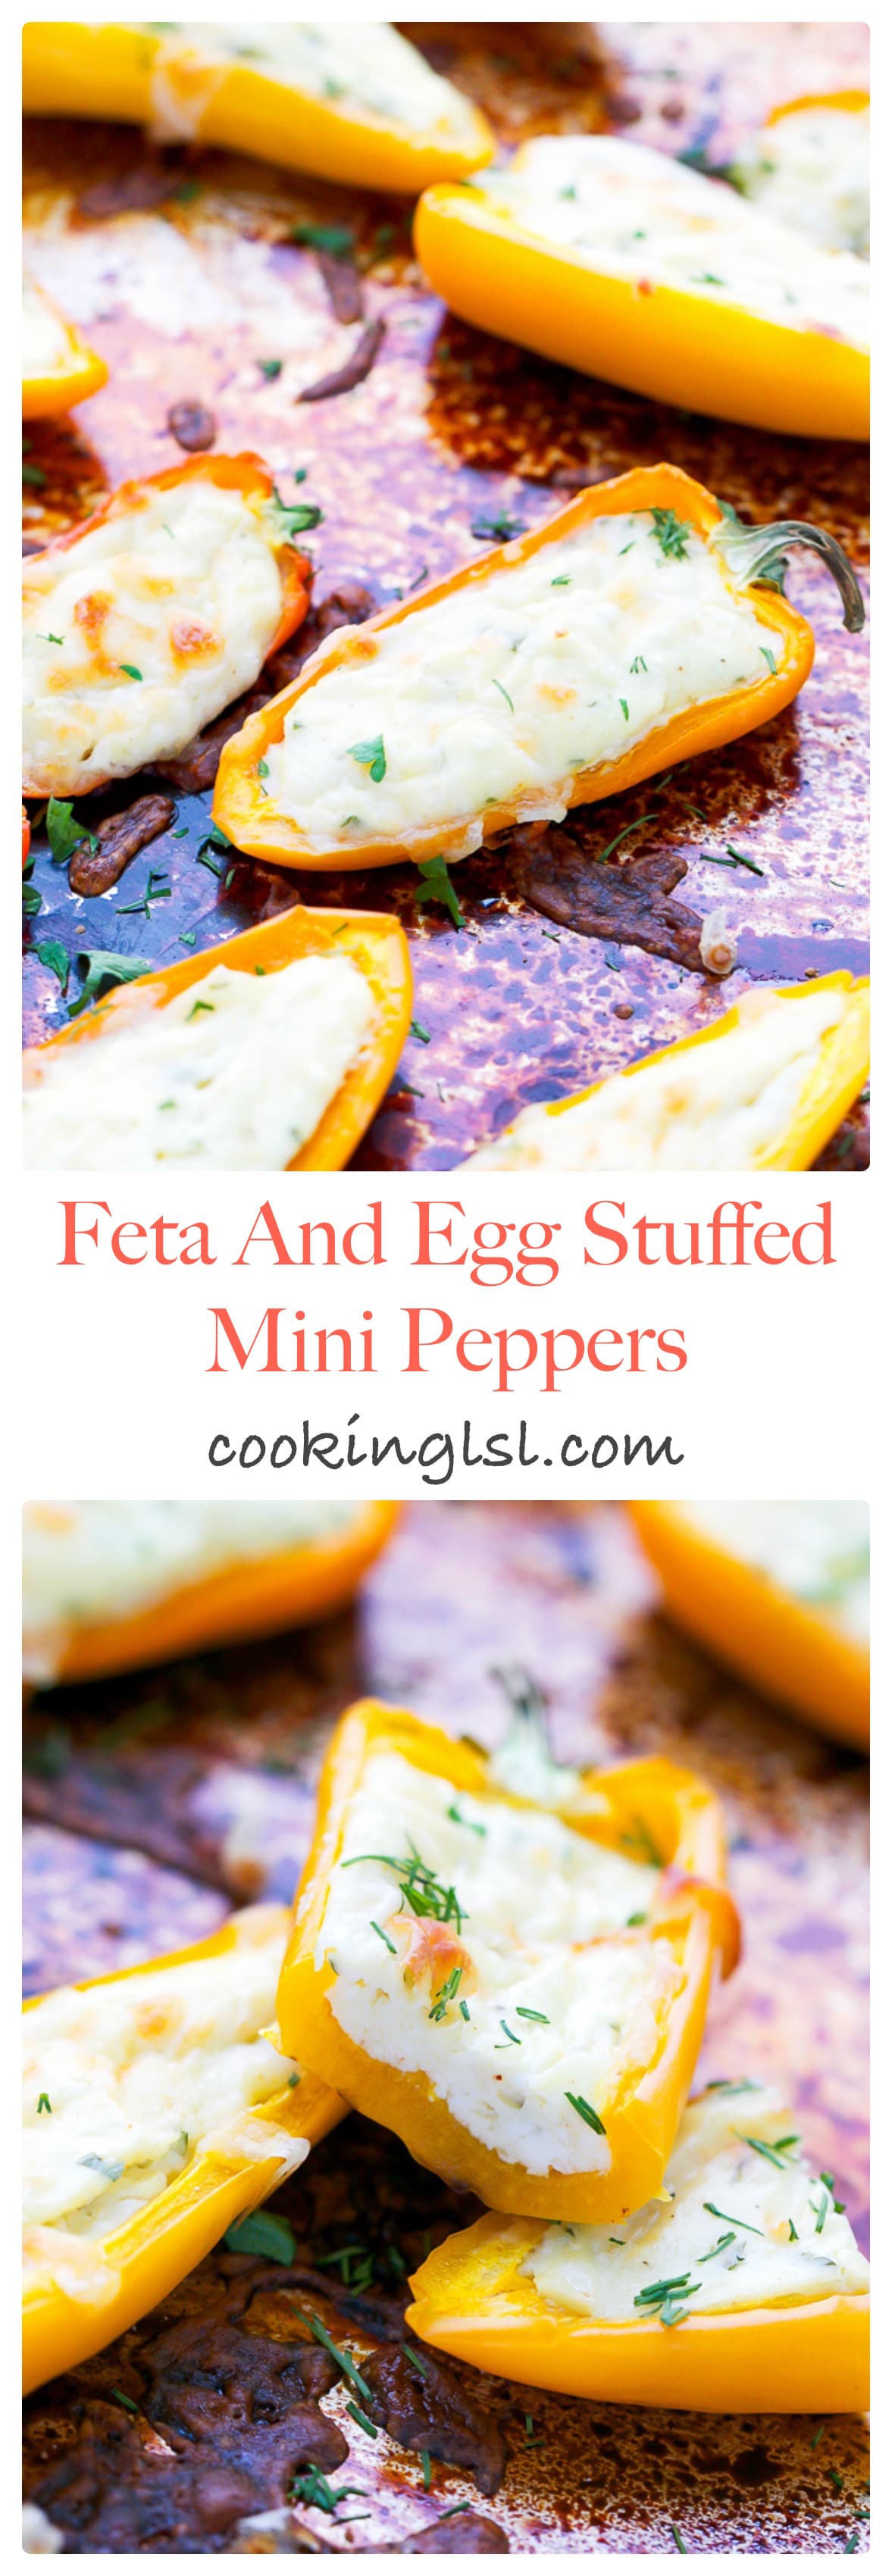 Feta-And-Egg-Stuffed-Mini-Peppers